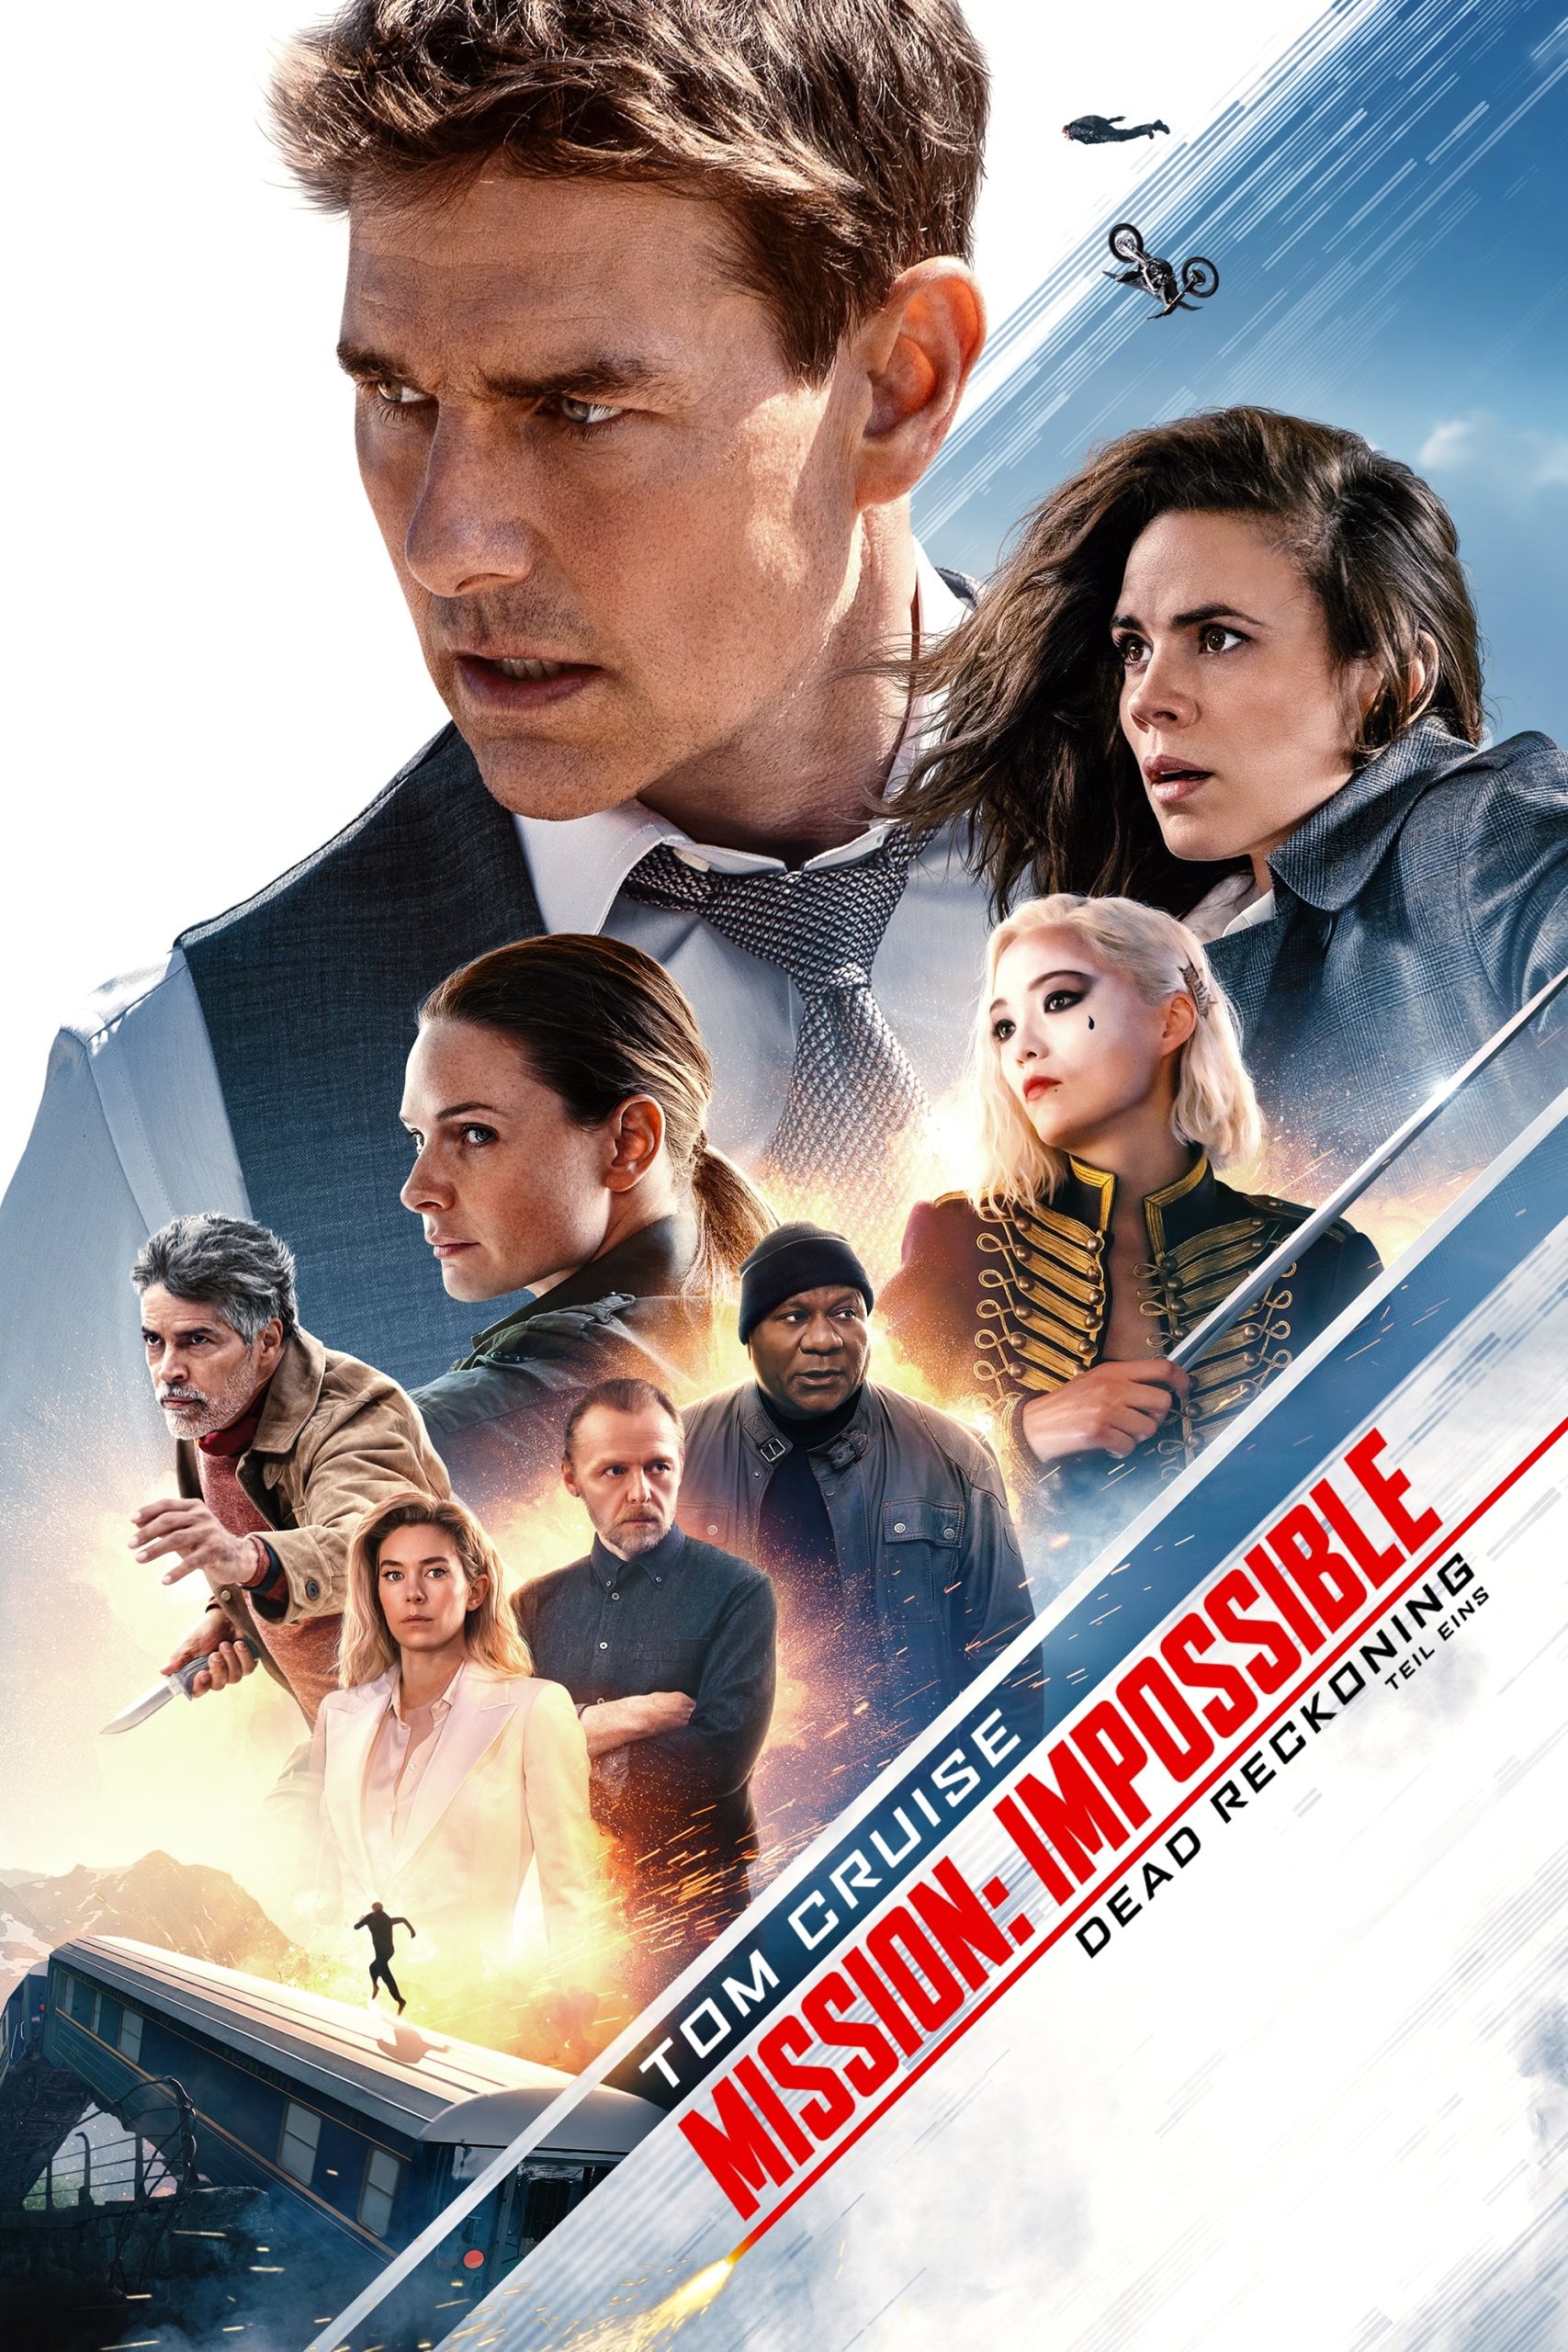 Poster for the movie "Mission: Impossible Odplata – První část"